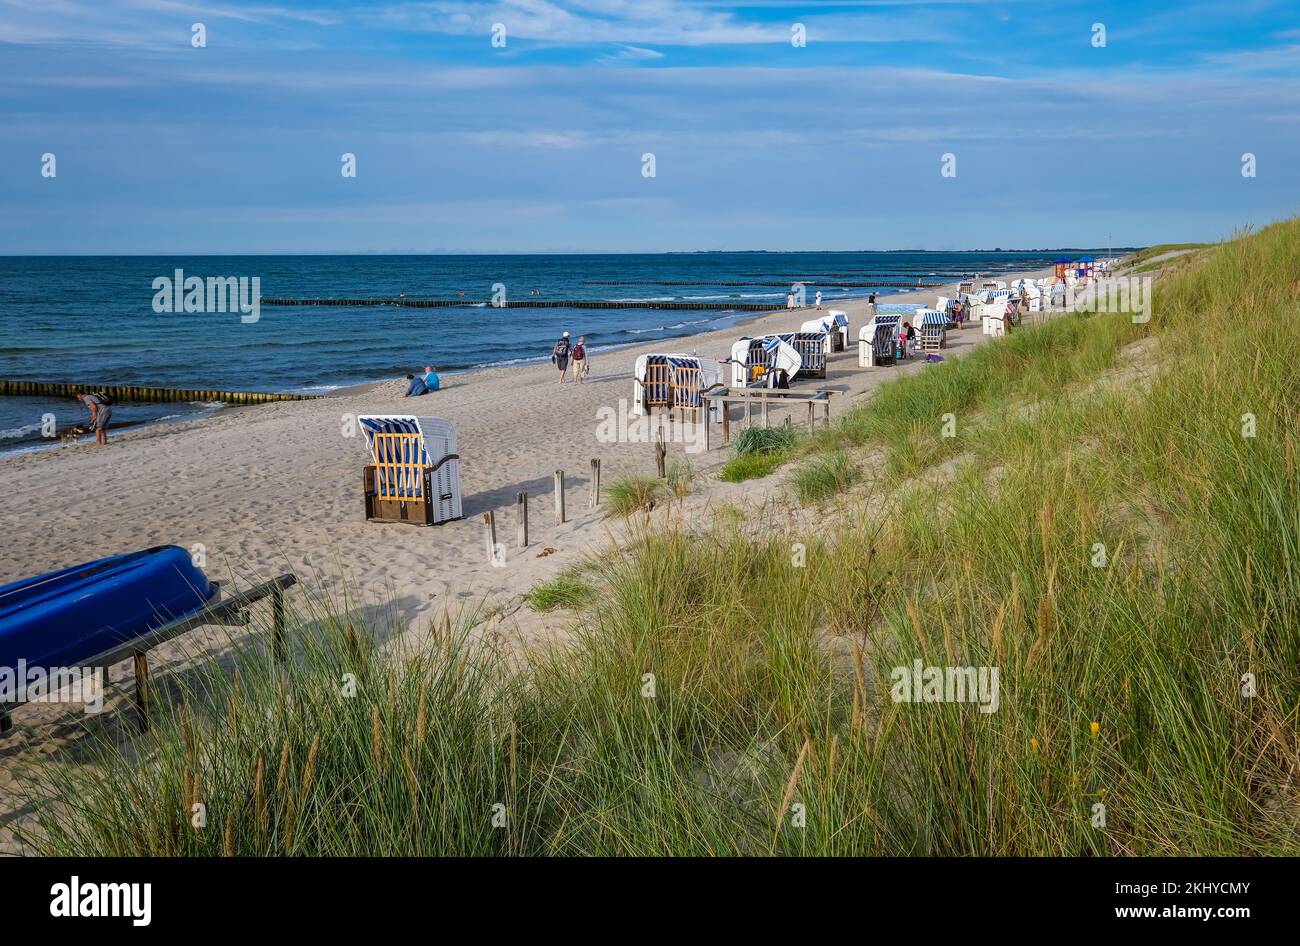 Graal-Mueritz, Mecklenburg-Vorpommern, Germania - Beacon sulla spiaggia sabbiosa del Mar Baltico Graal-Mueritz spa. Poche persone sulla spiaggia. Il Me Foto Stock